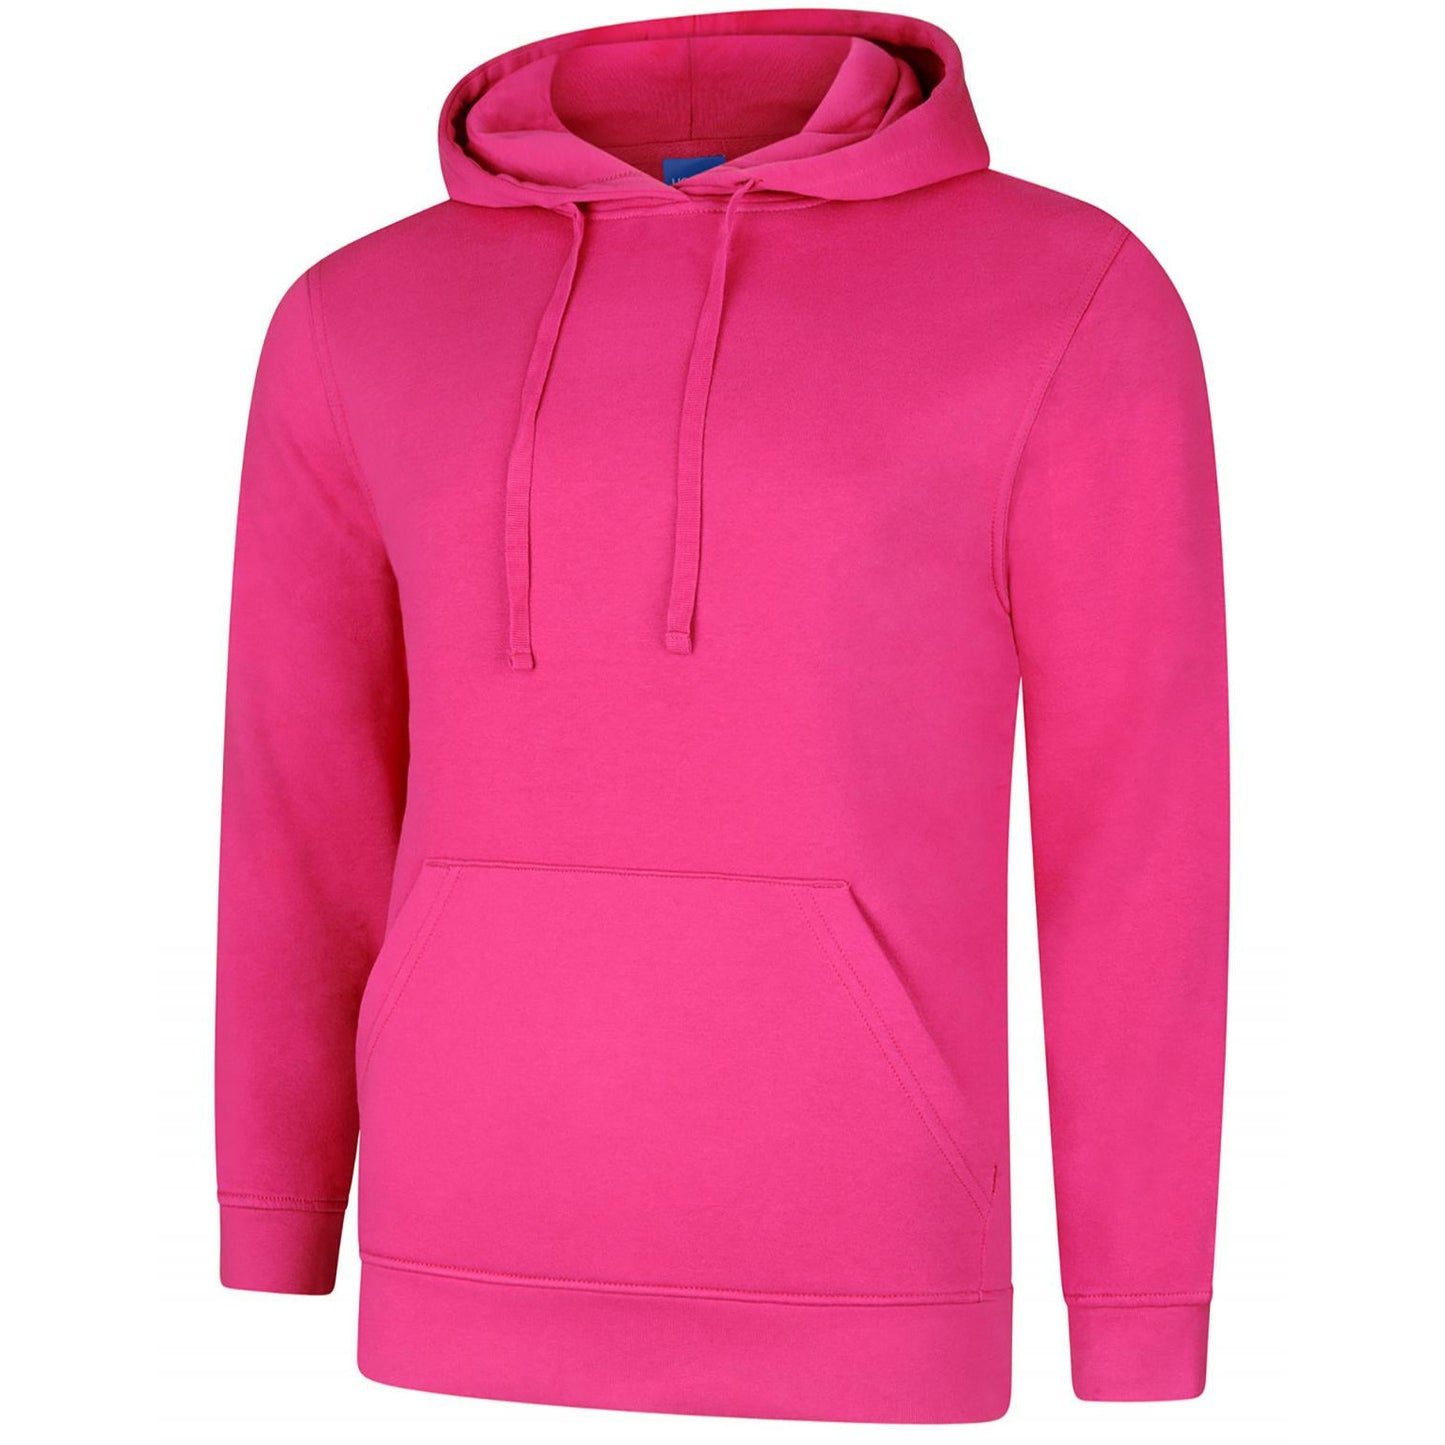 Deluxe Hooded Sweatshirt (XS - M) Hot Pink